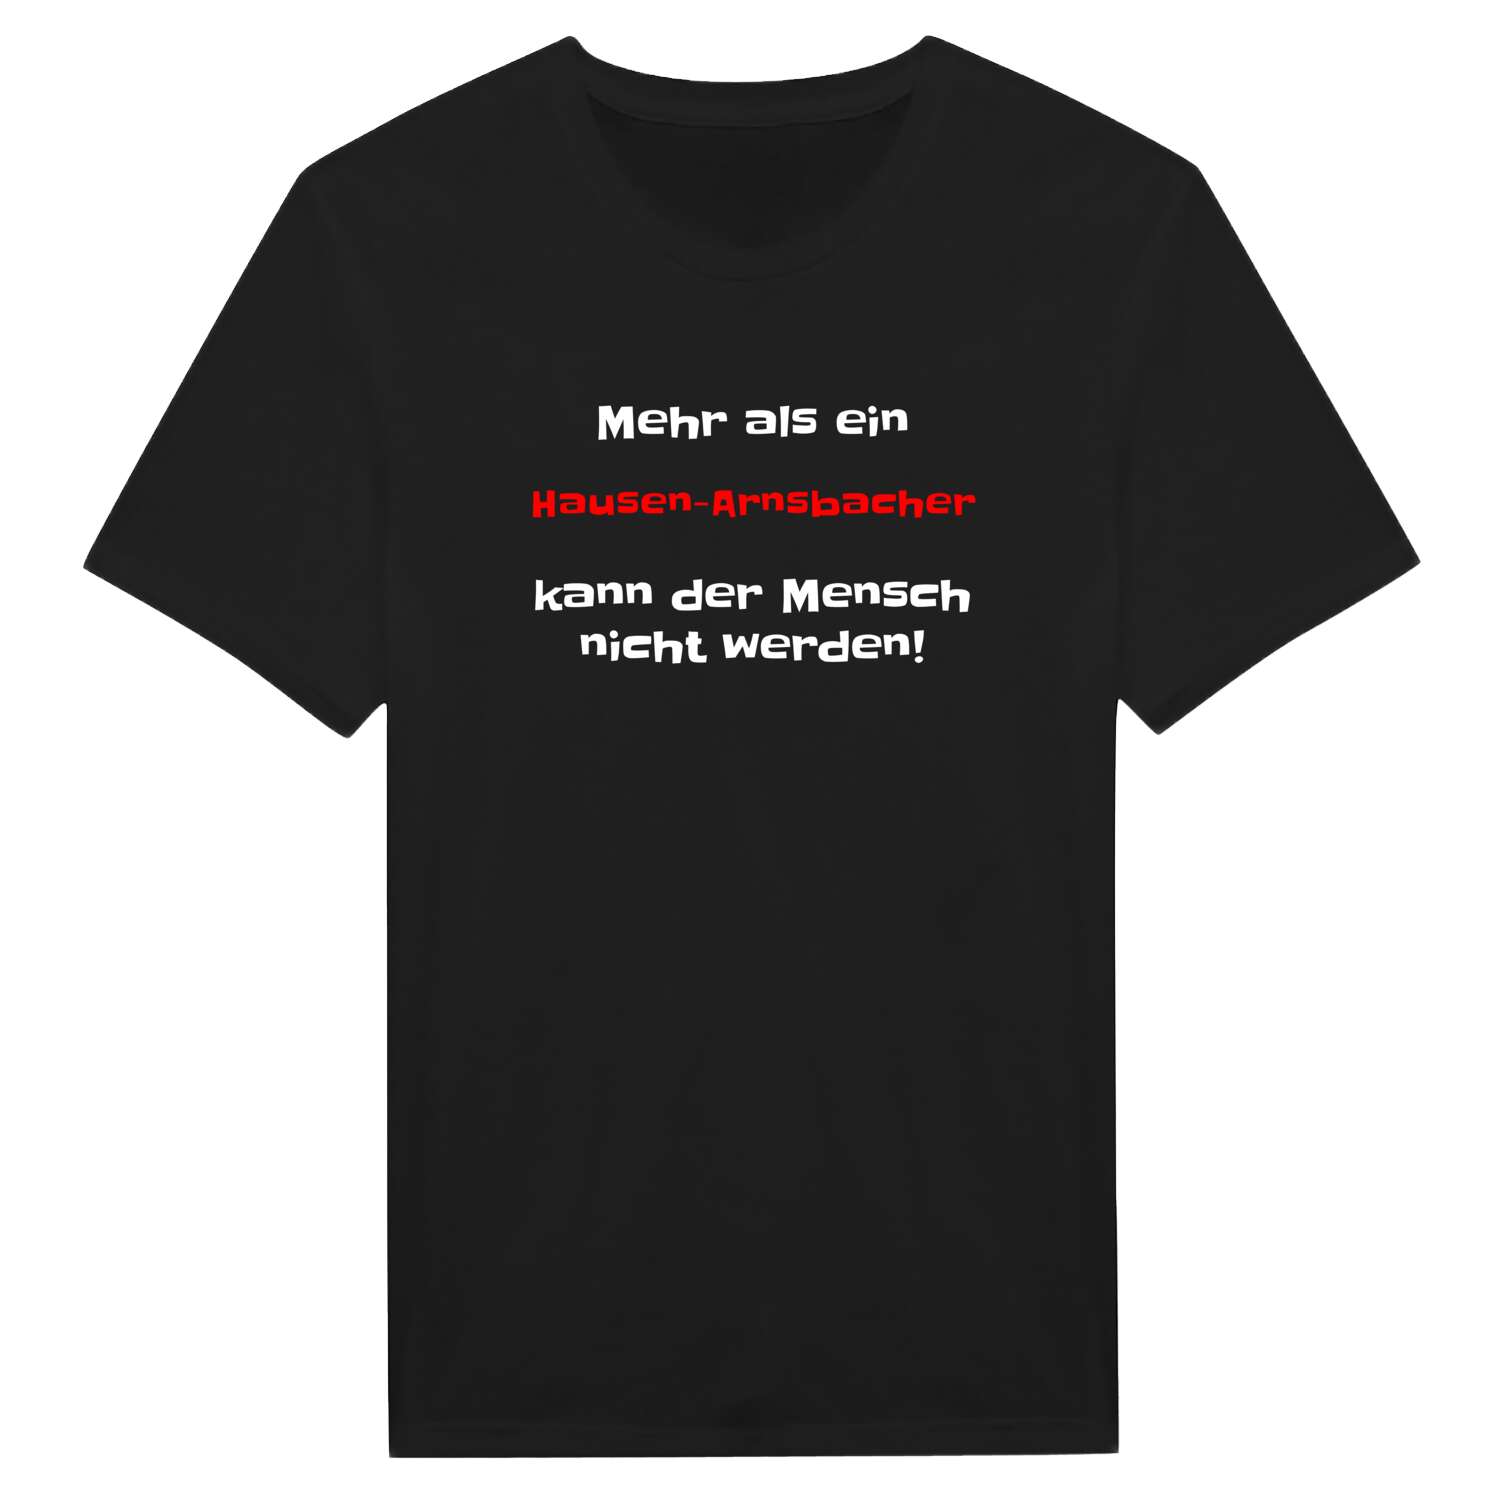 Hausen-Arnsbach T-Shirt »Mehr als ein«